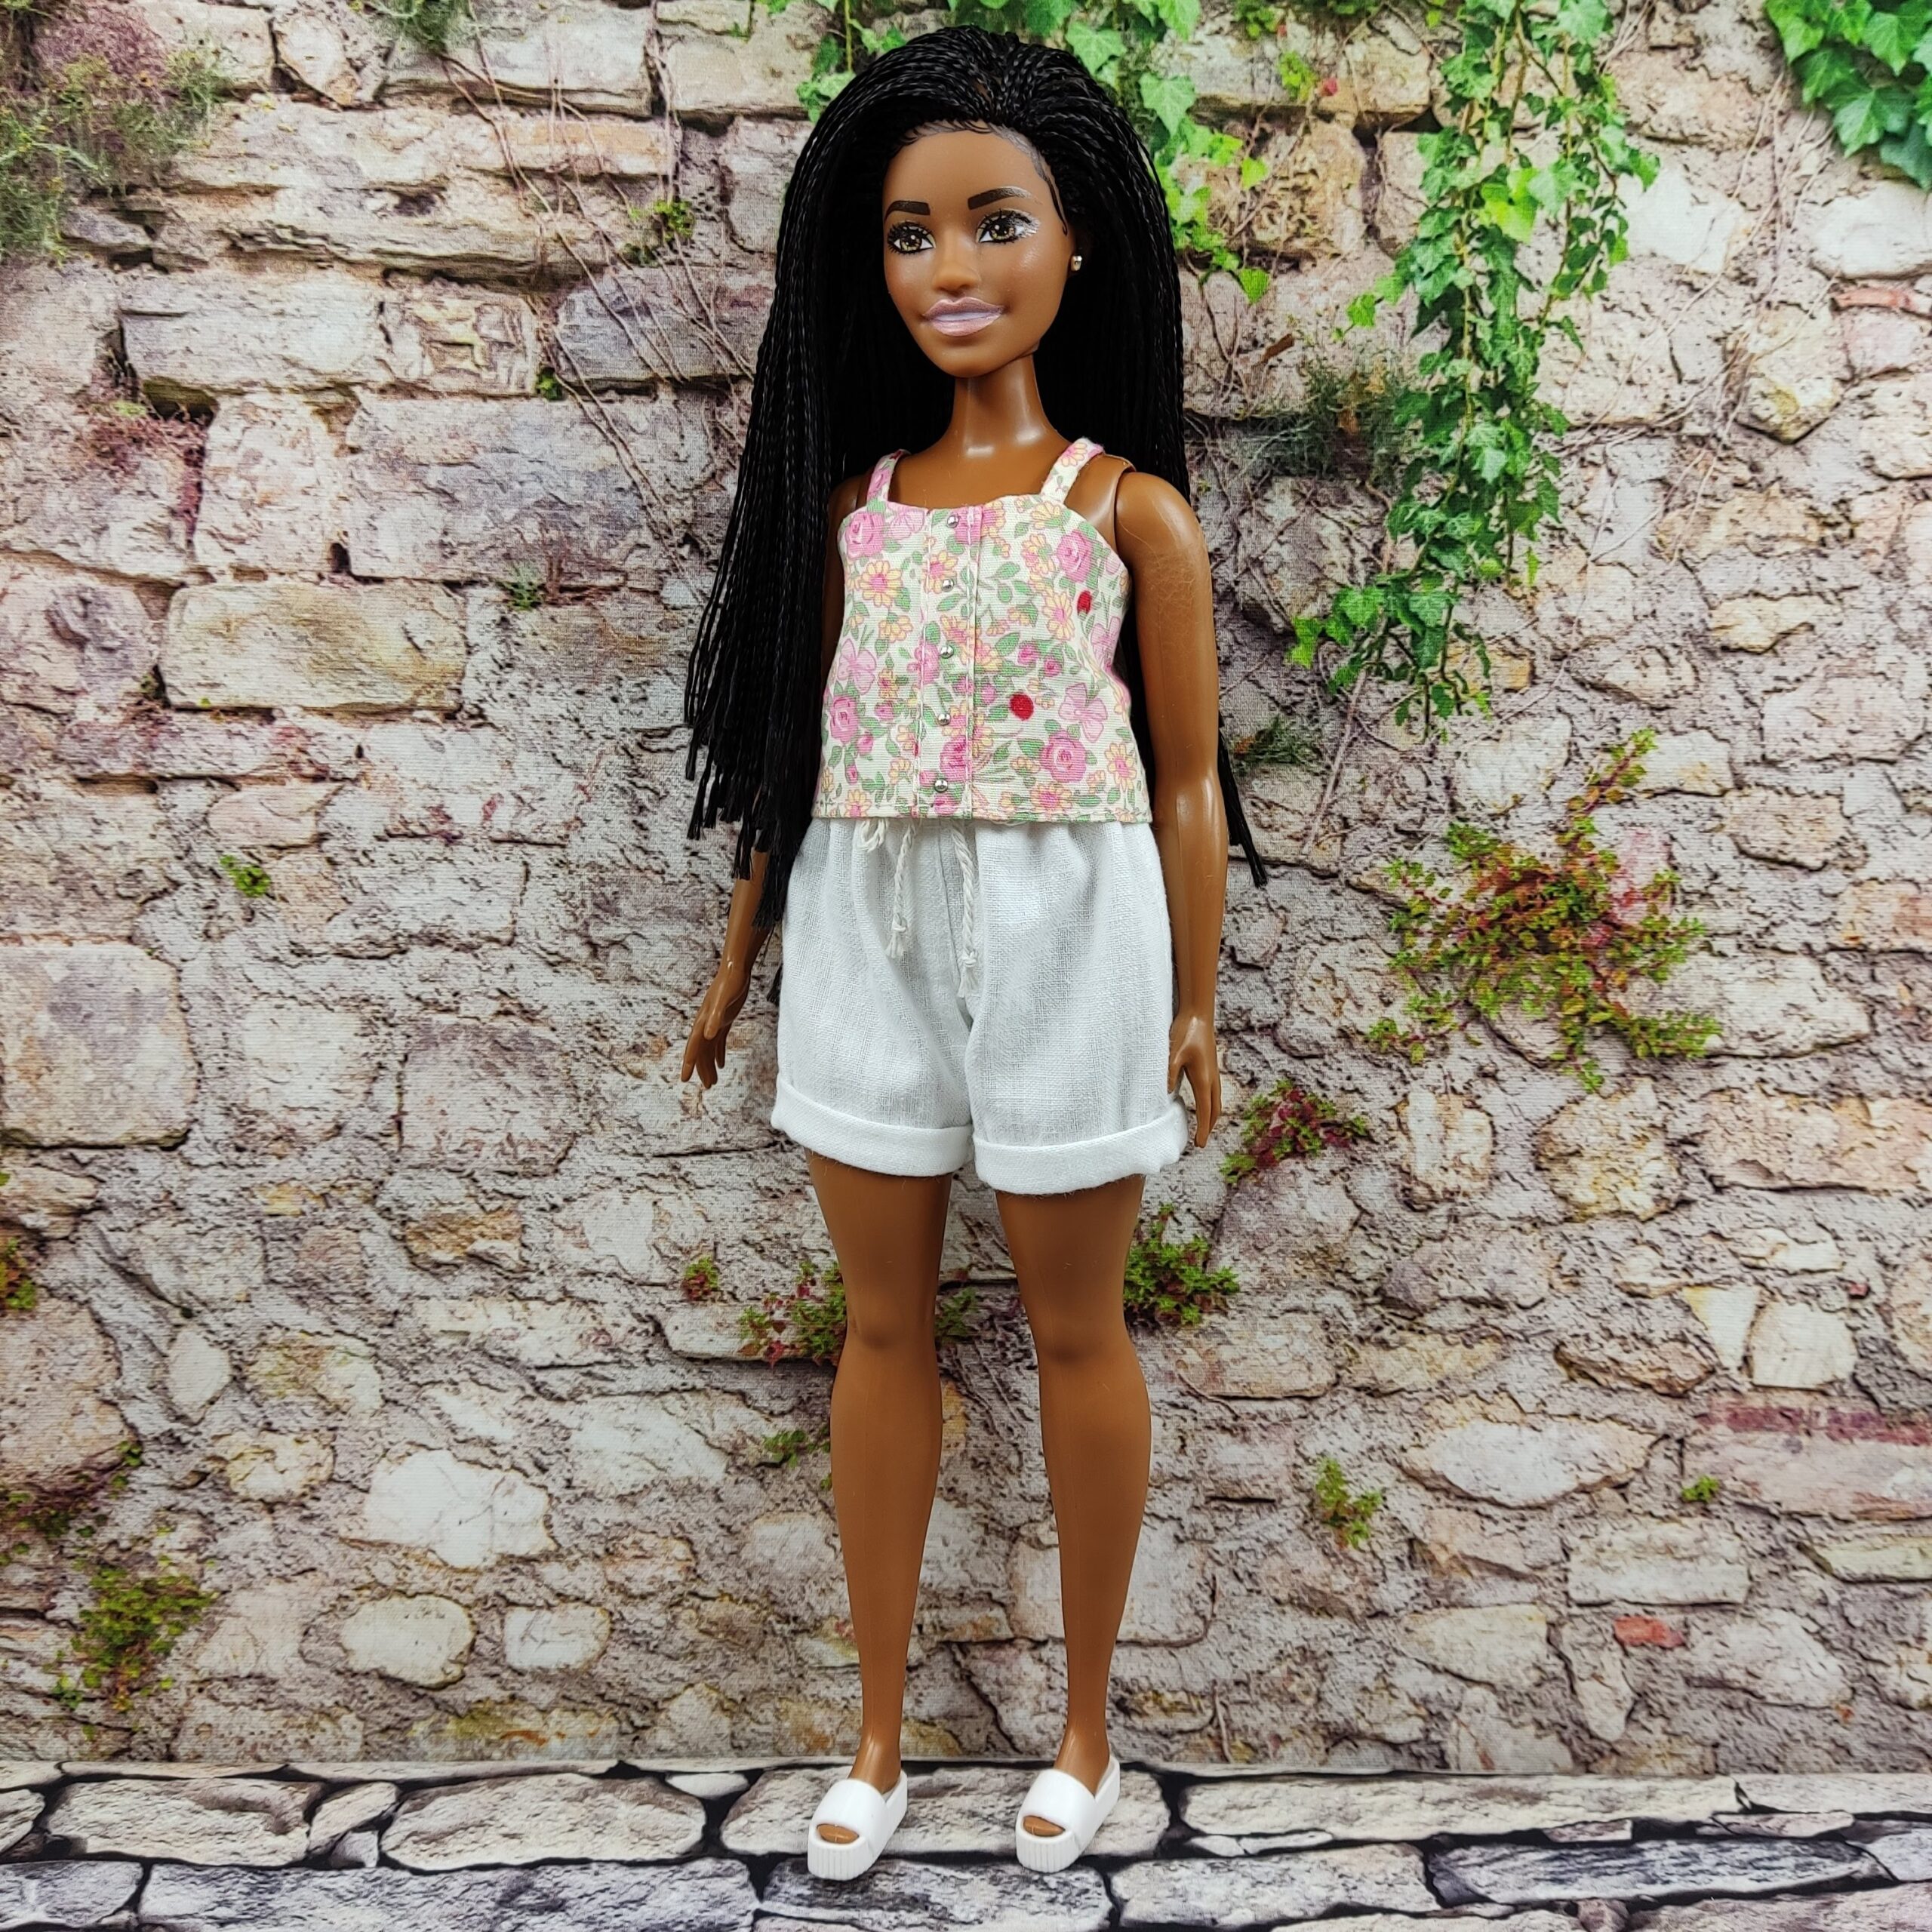 Barbie doll clothes by VikukuShop